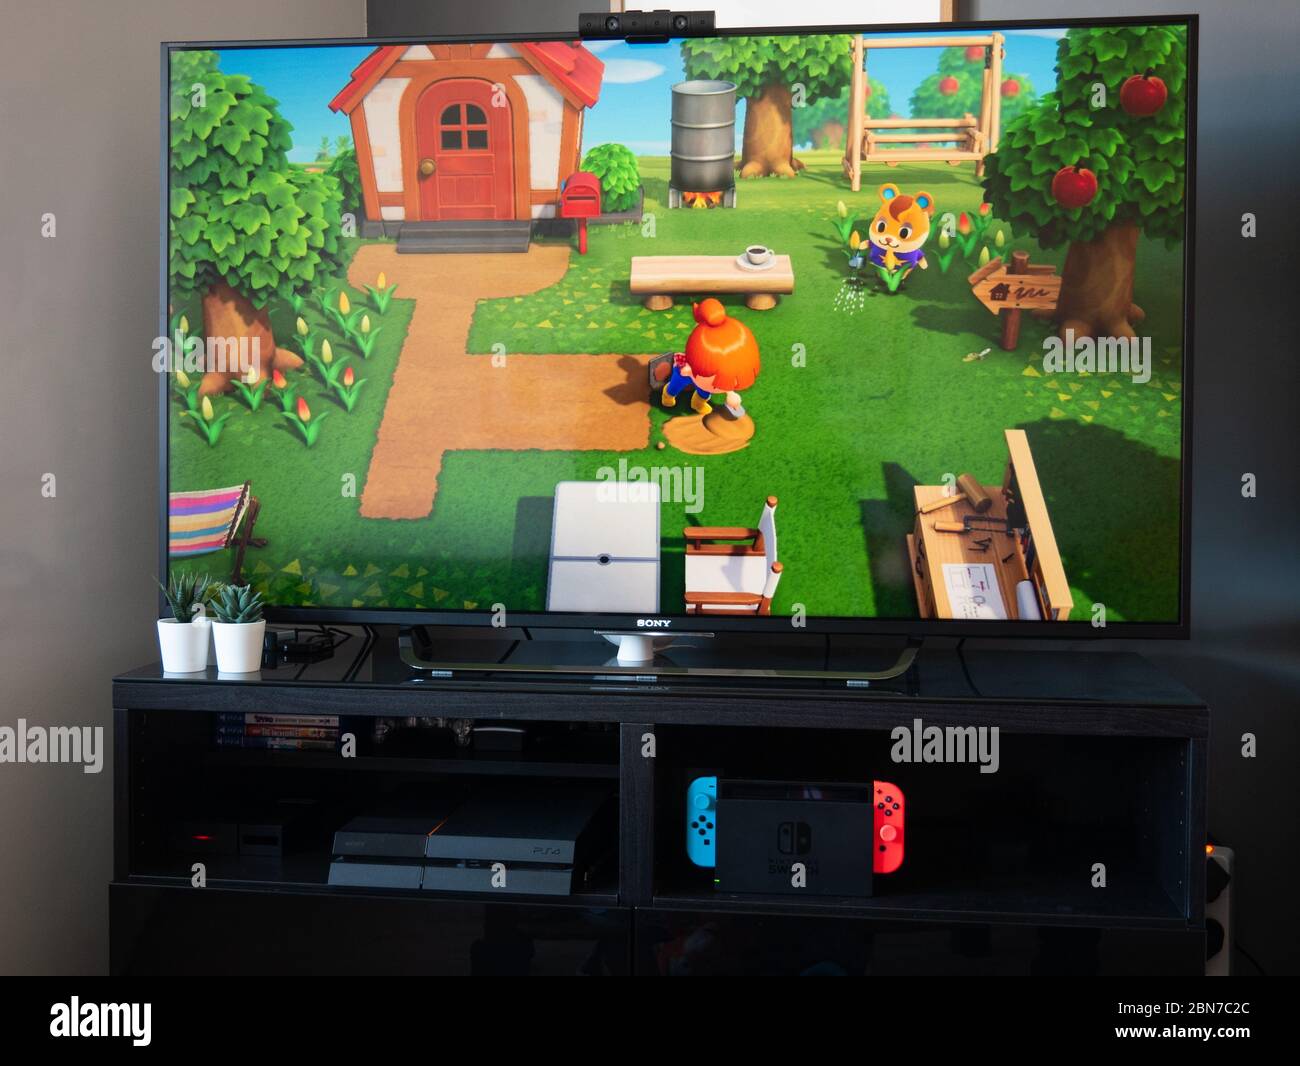 Mai 2020, Großbritannien: Nintendo Switch-Spielkonsole auf tv-Tier überquert neue Horizonte Stockfoto